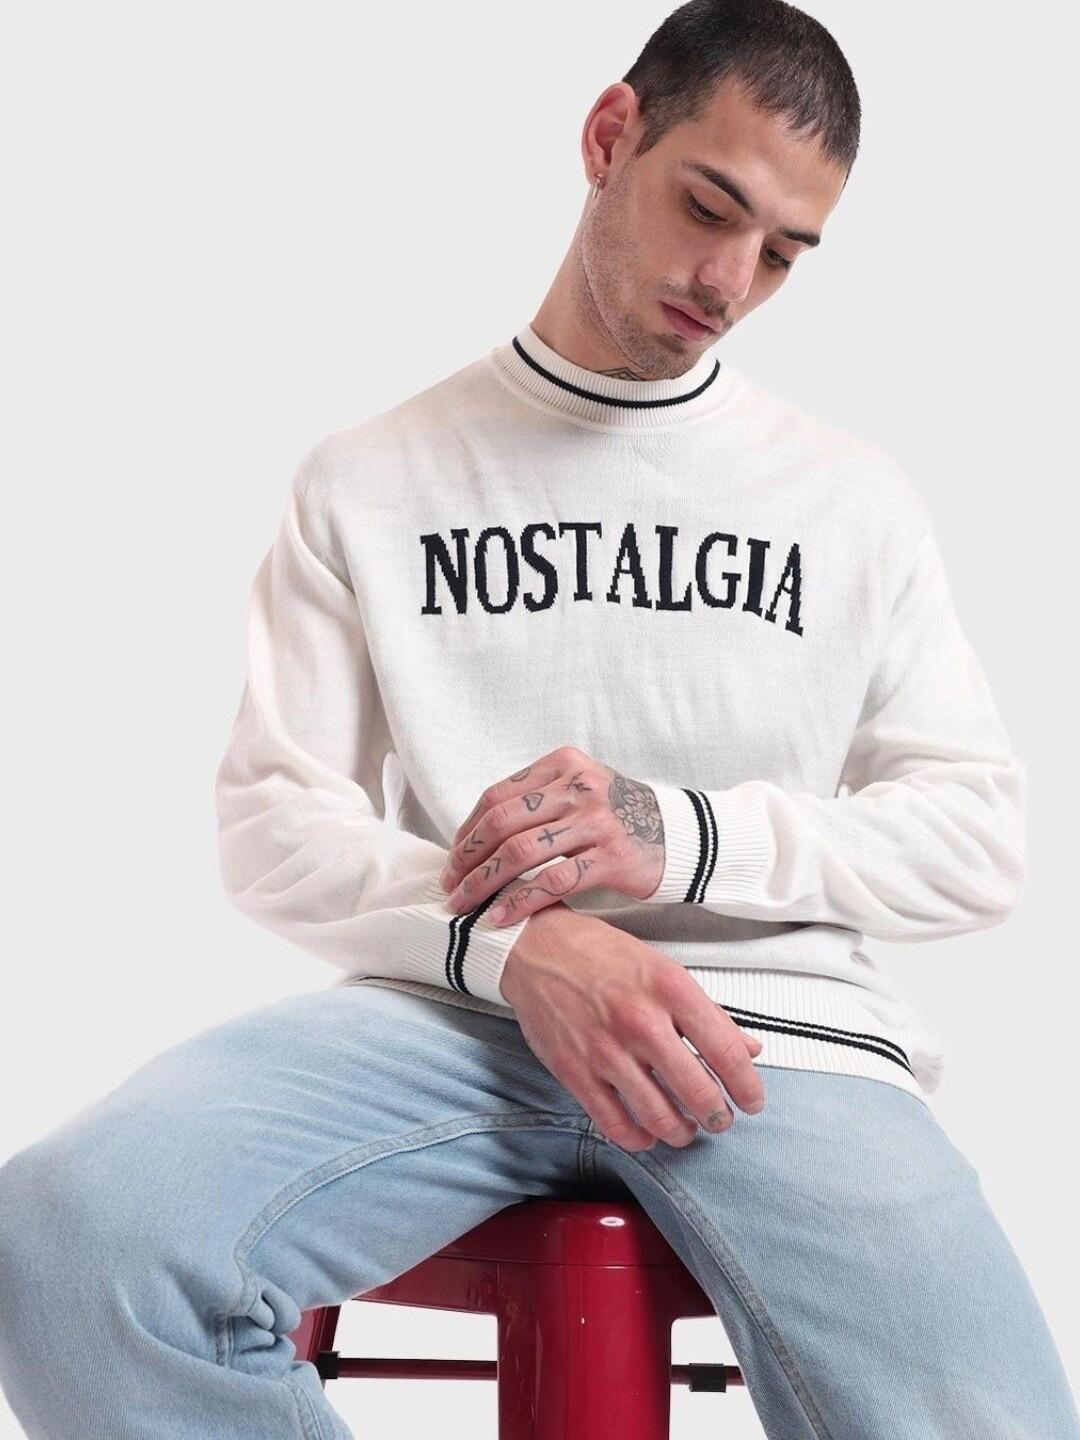 bewakoof-men-gardenia-nostalgia-typography-oversized-sweater